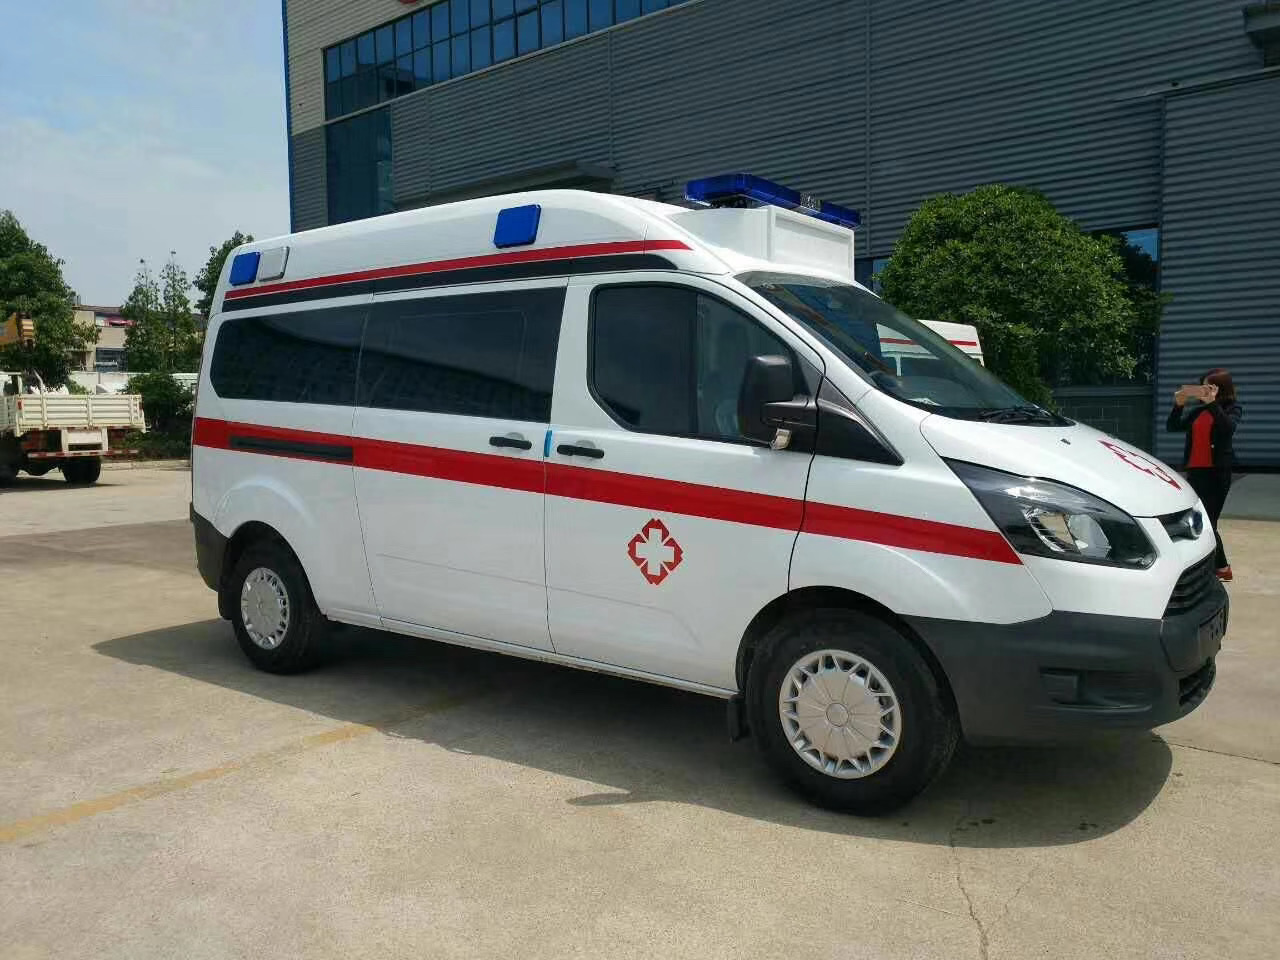 昂仁县出院转院救护车